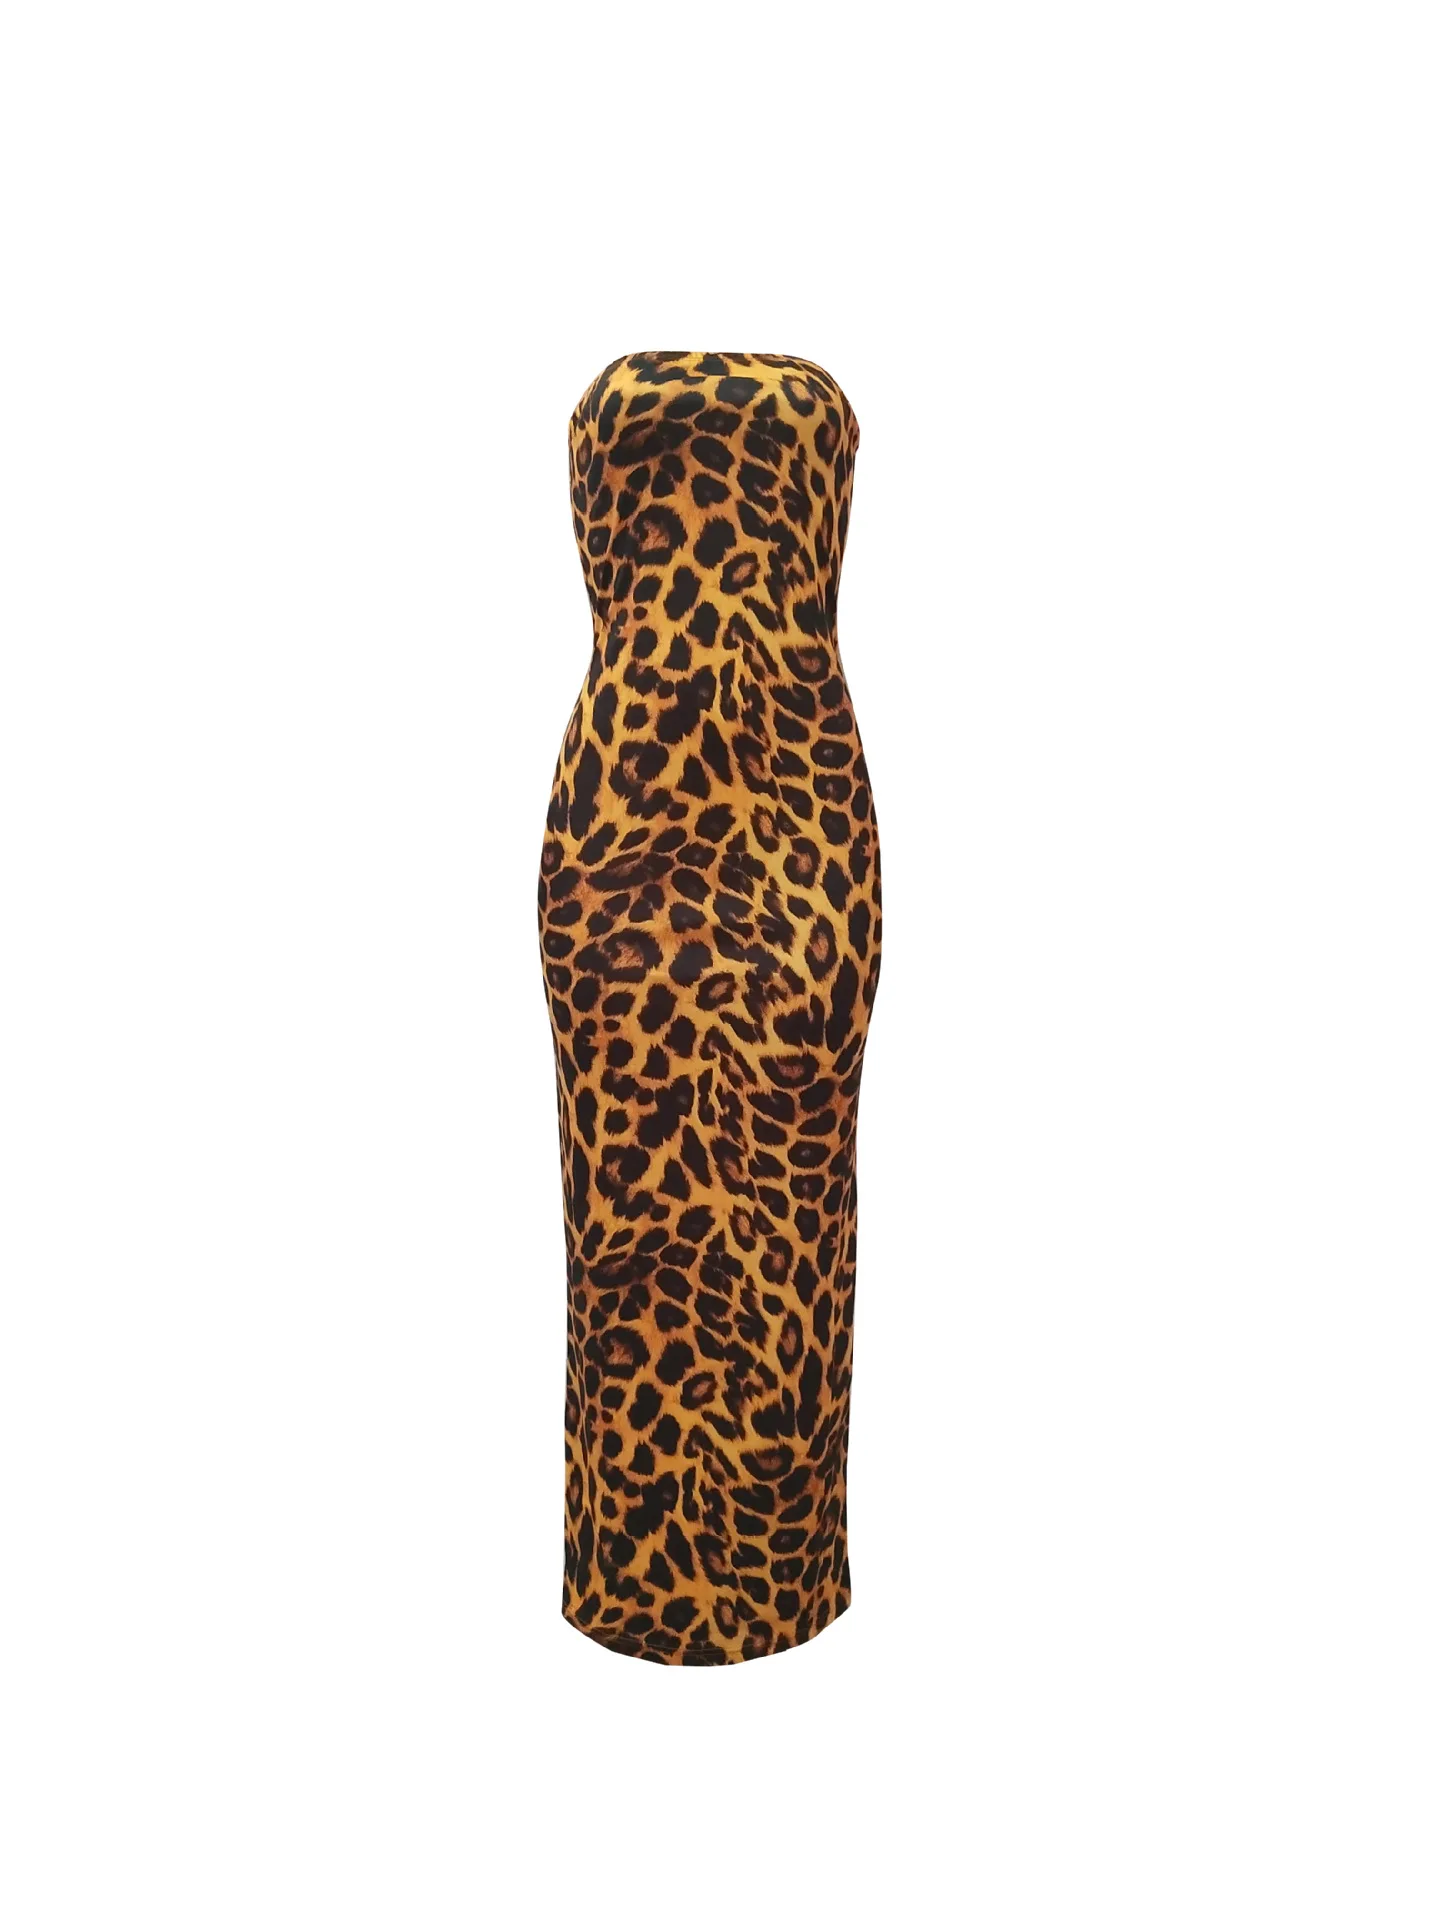 Женский комплект, длинное платье с леопардовым принтом+ короткое укороченное платье с длинным рукавом, съемное облегающее платье, комплект, Открытое платье размера плюс 2 XL